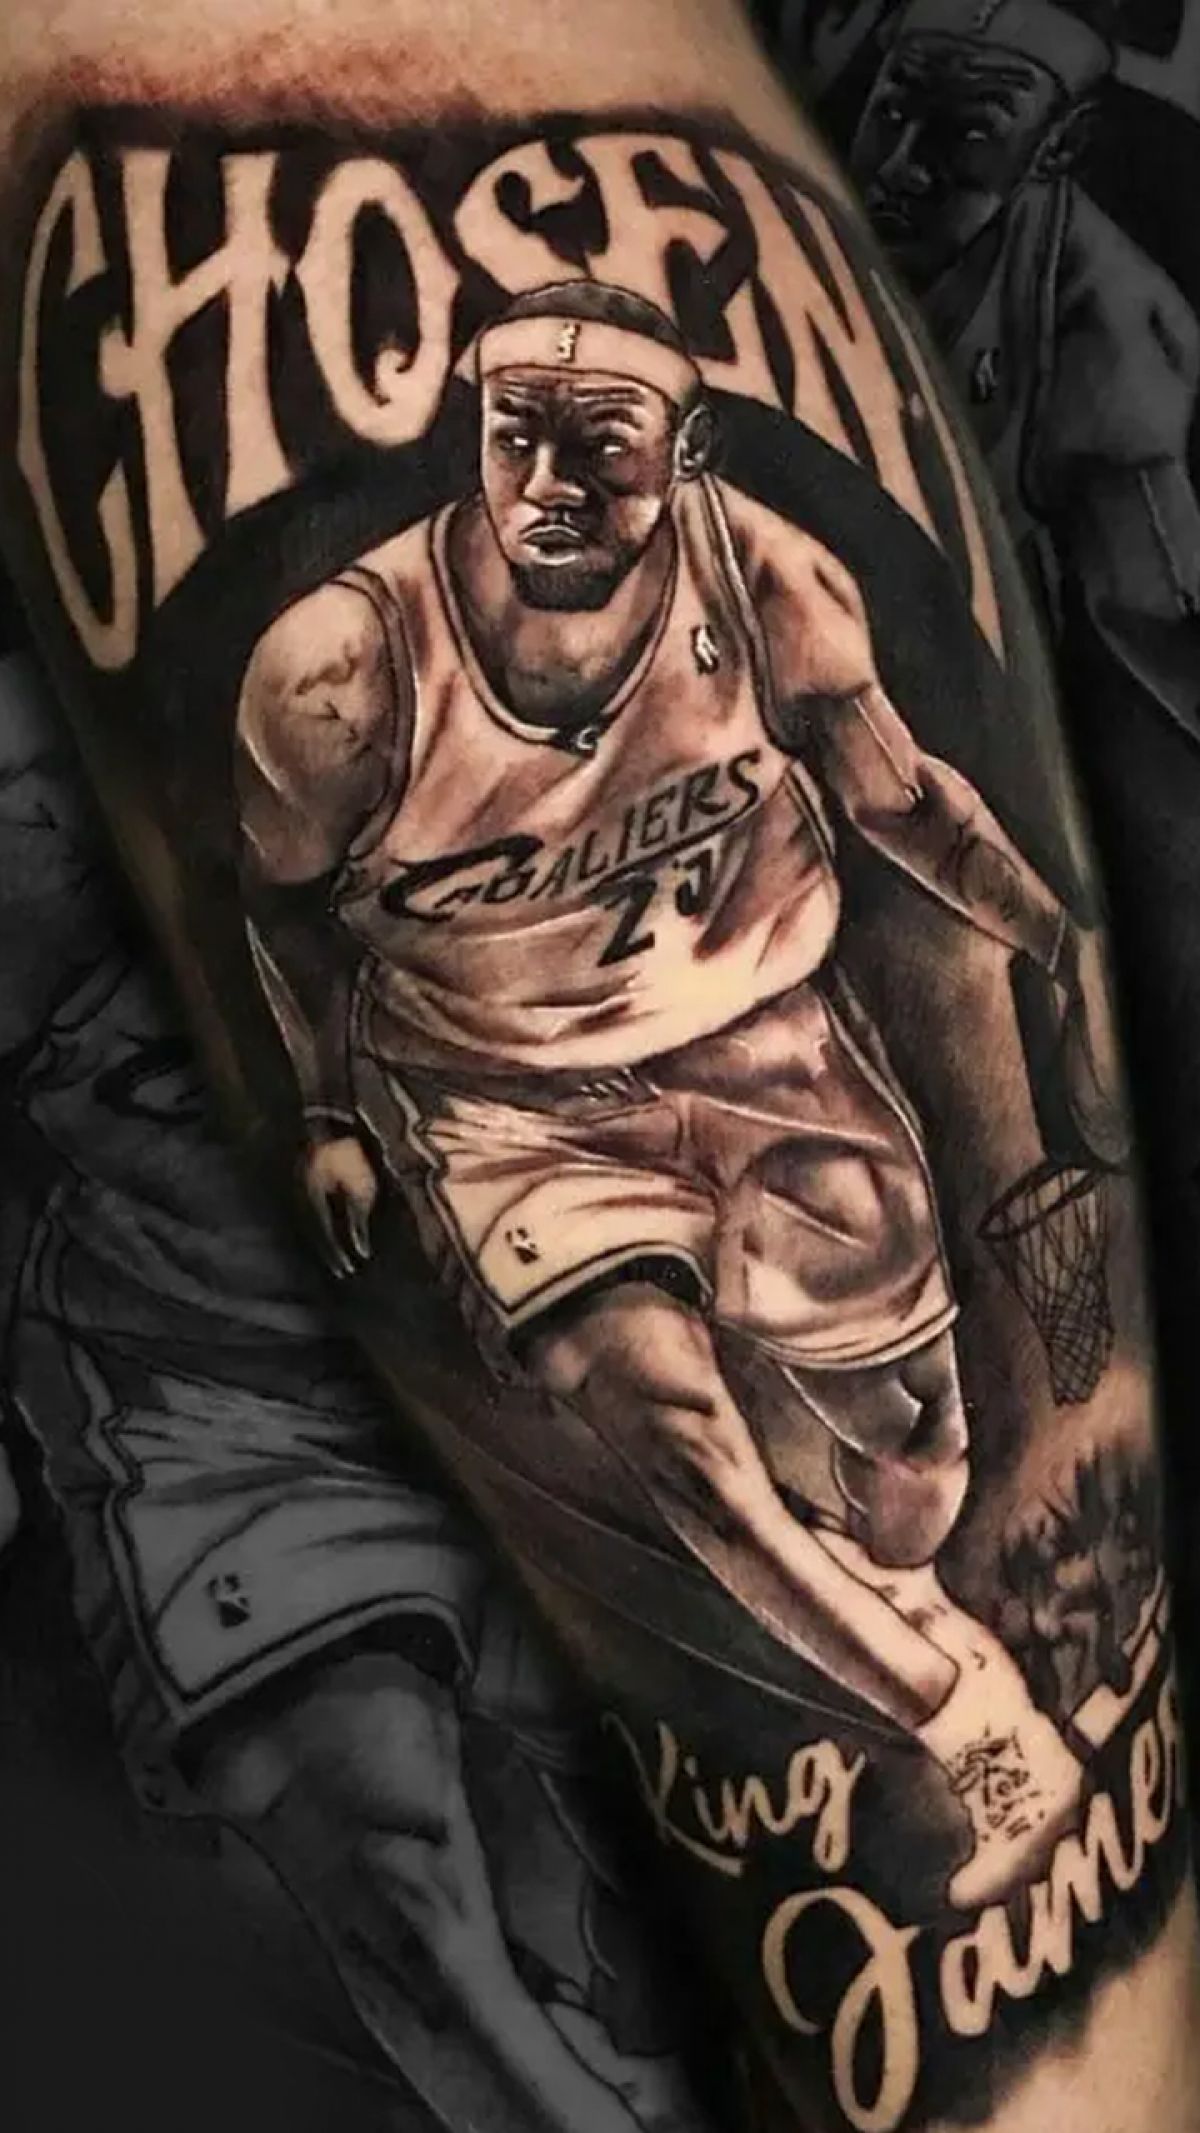 LeBron James tattoos get NBA 2K16 maker sued for copyright infringement   Polygon